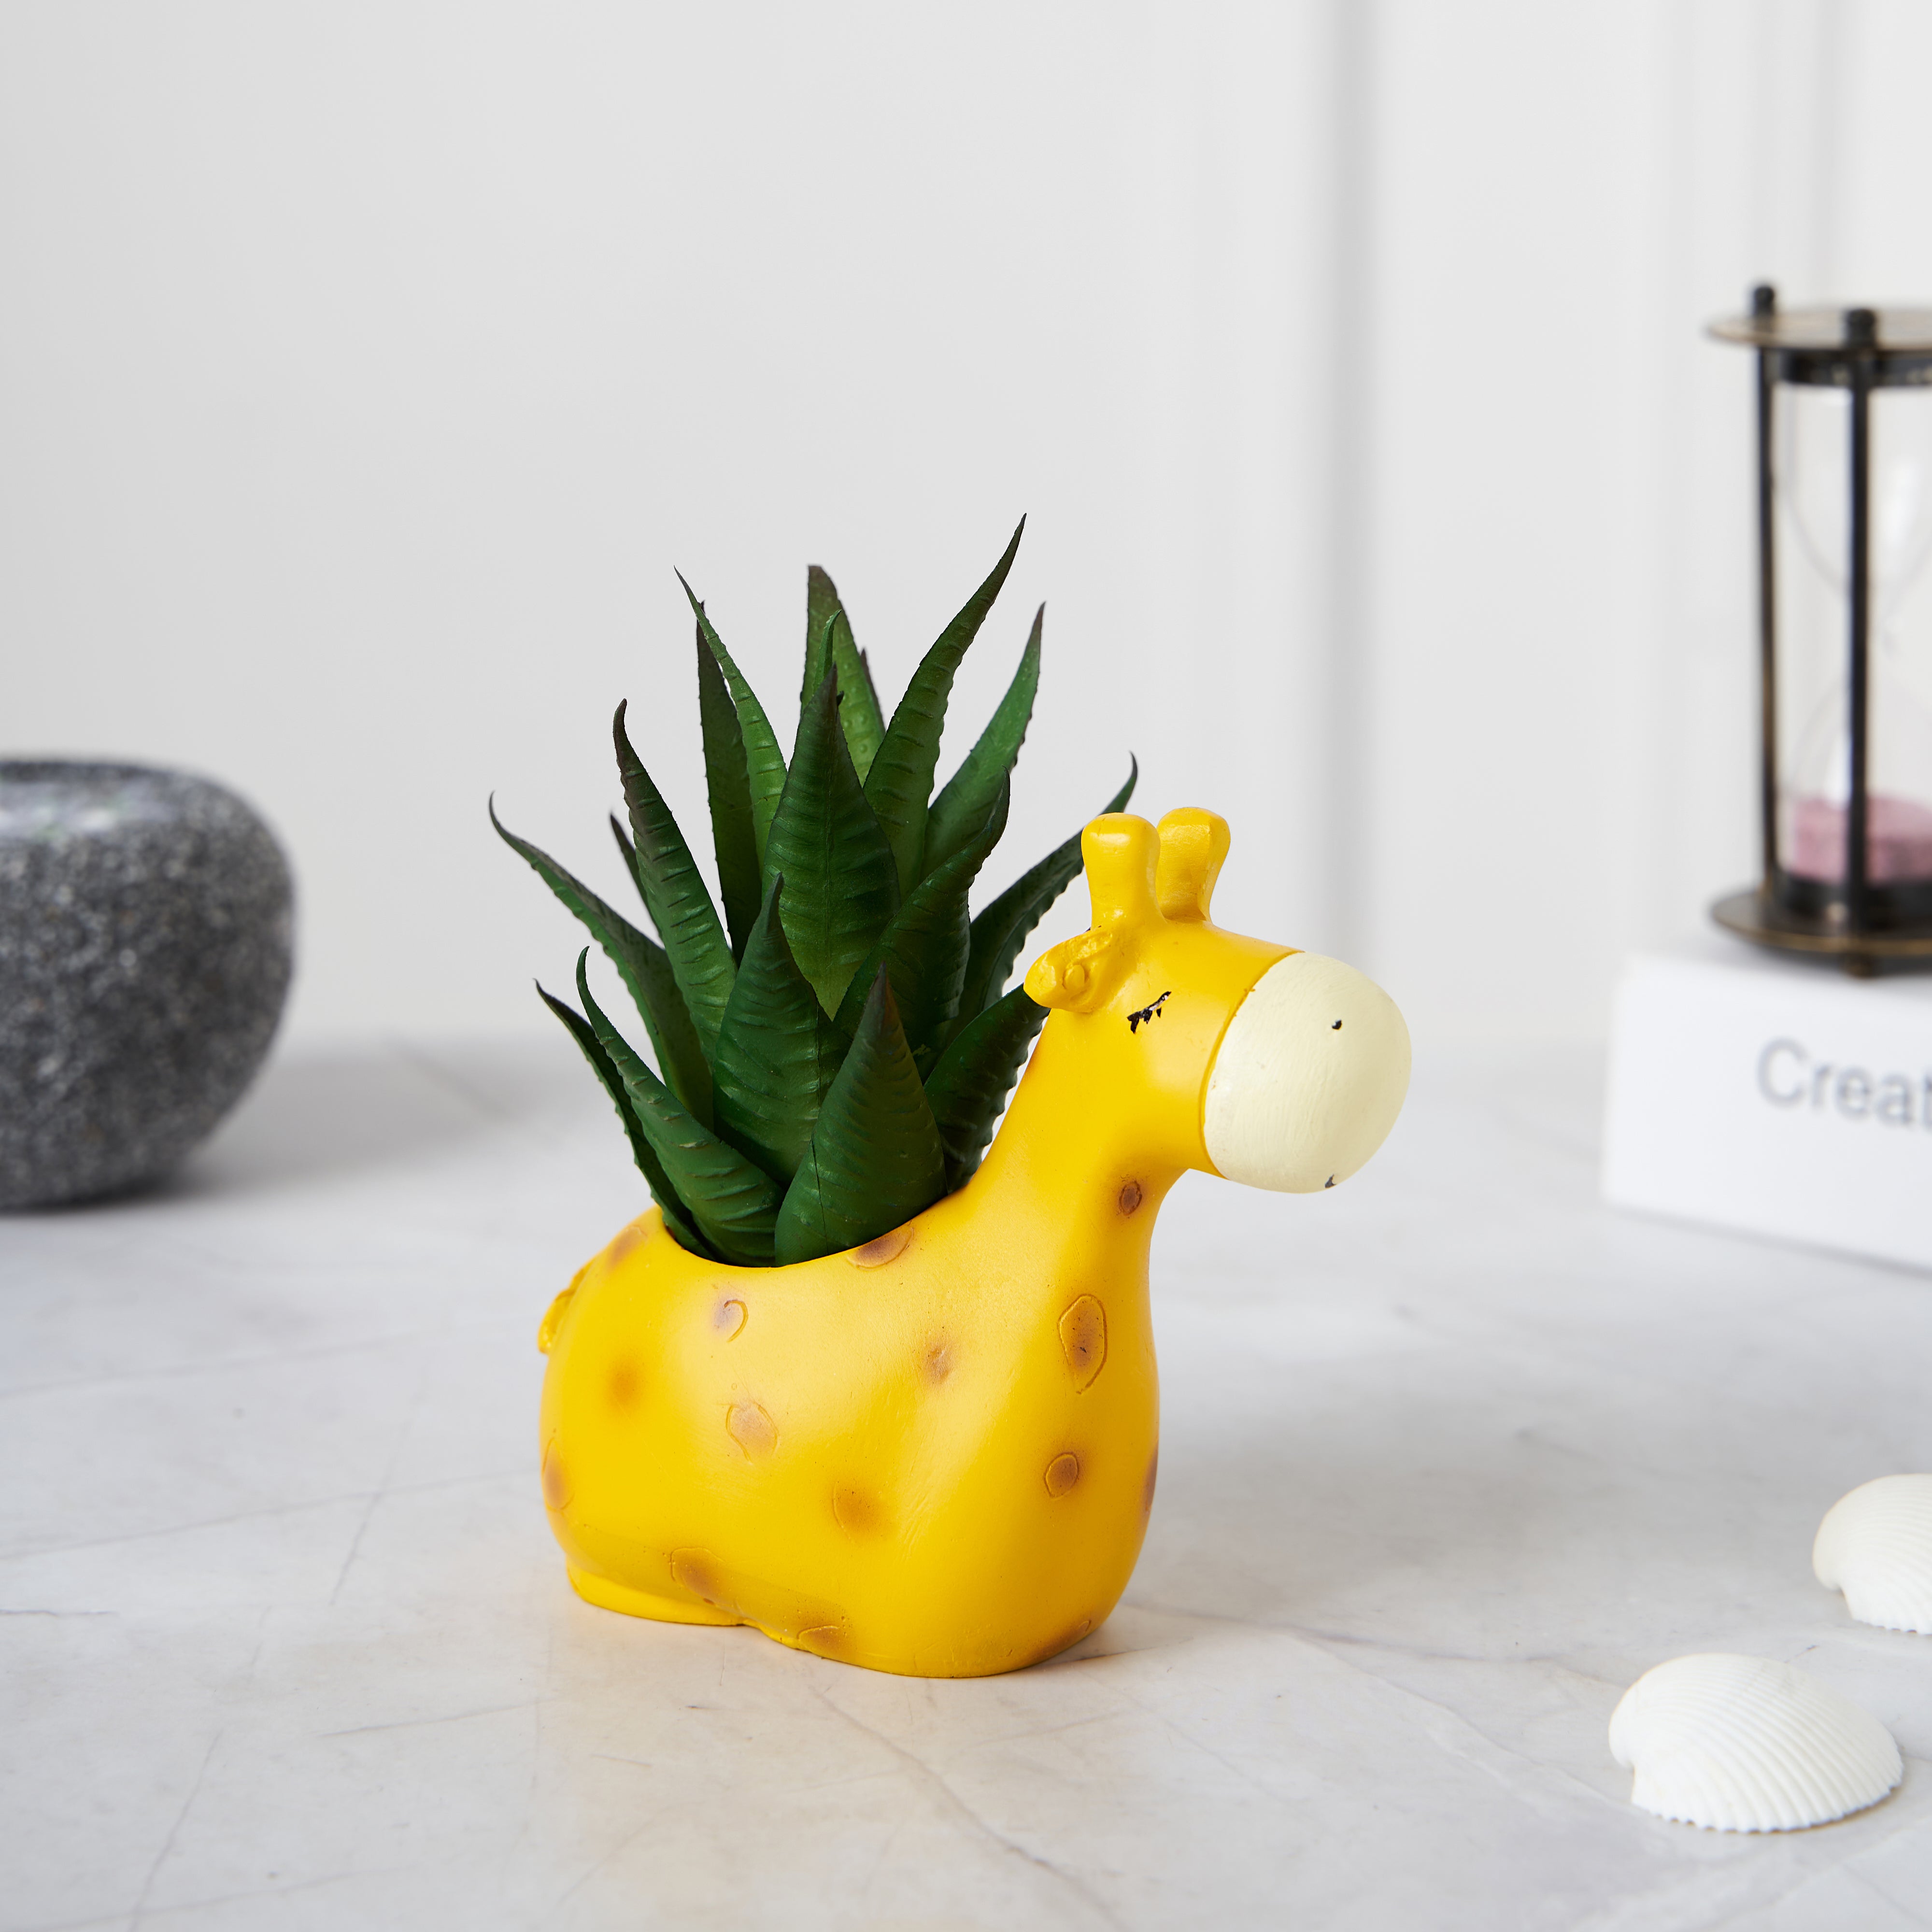 Cute Giraffe Succulent Cactus Flower Planter for Home Garden Office Desktop